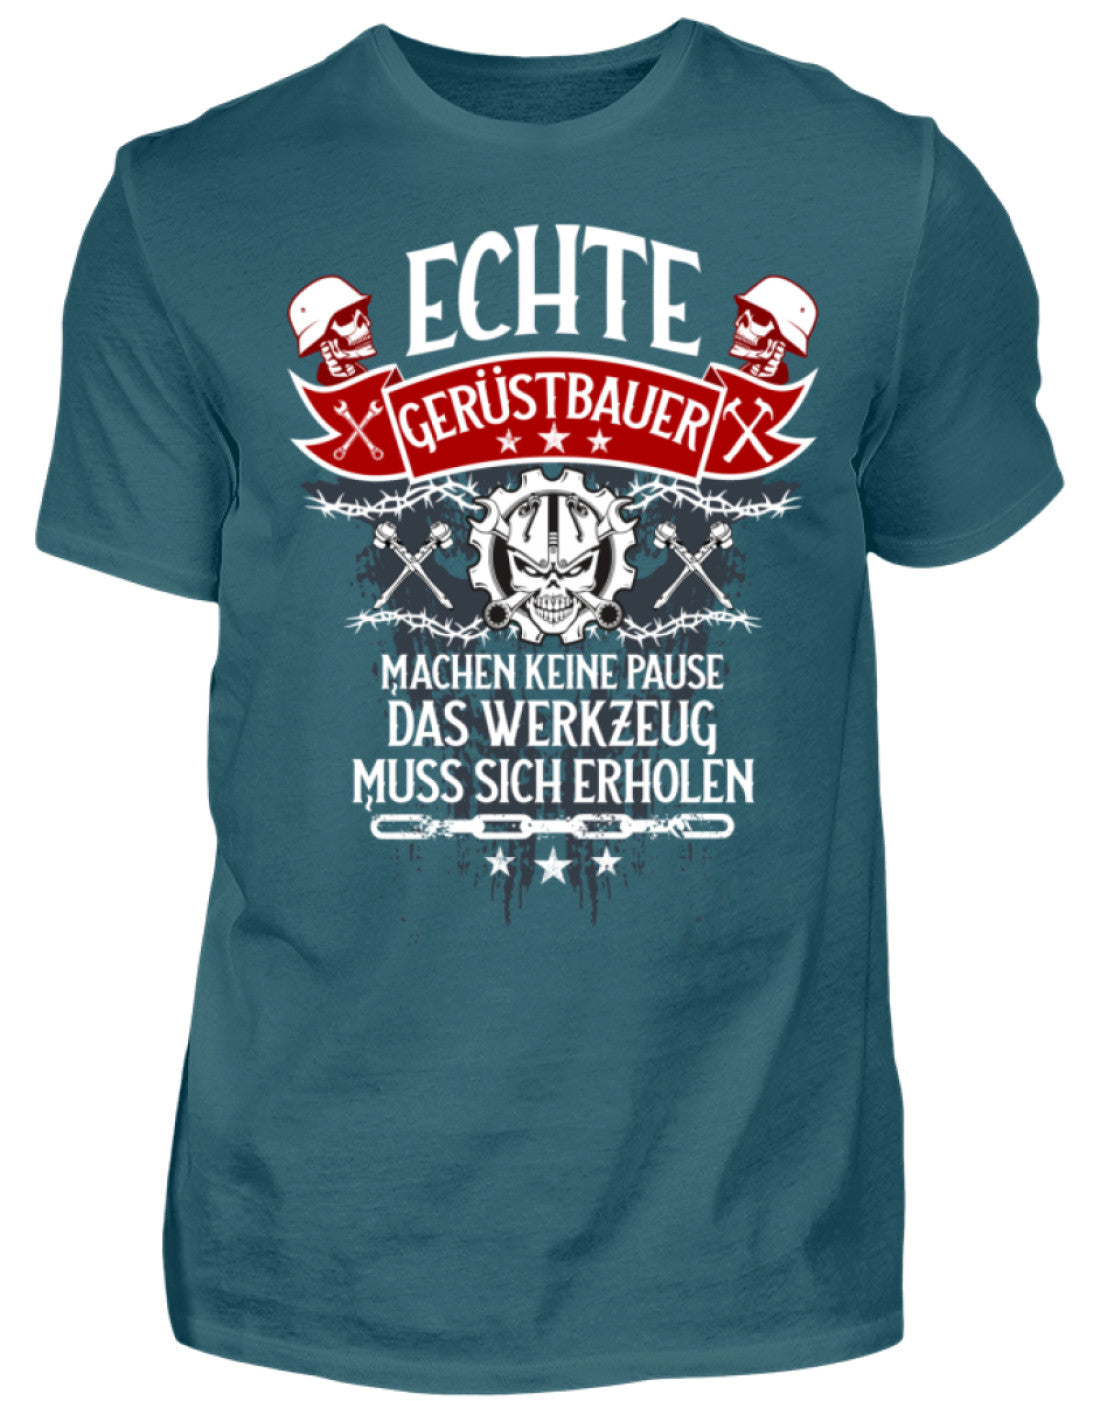 Gerüstbauer T-Shirt Echte Gerüstbauer €21.95 Gerüstbauer - Shop >>